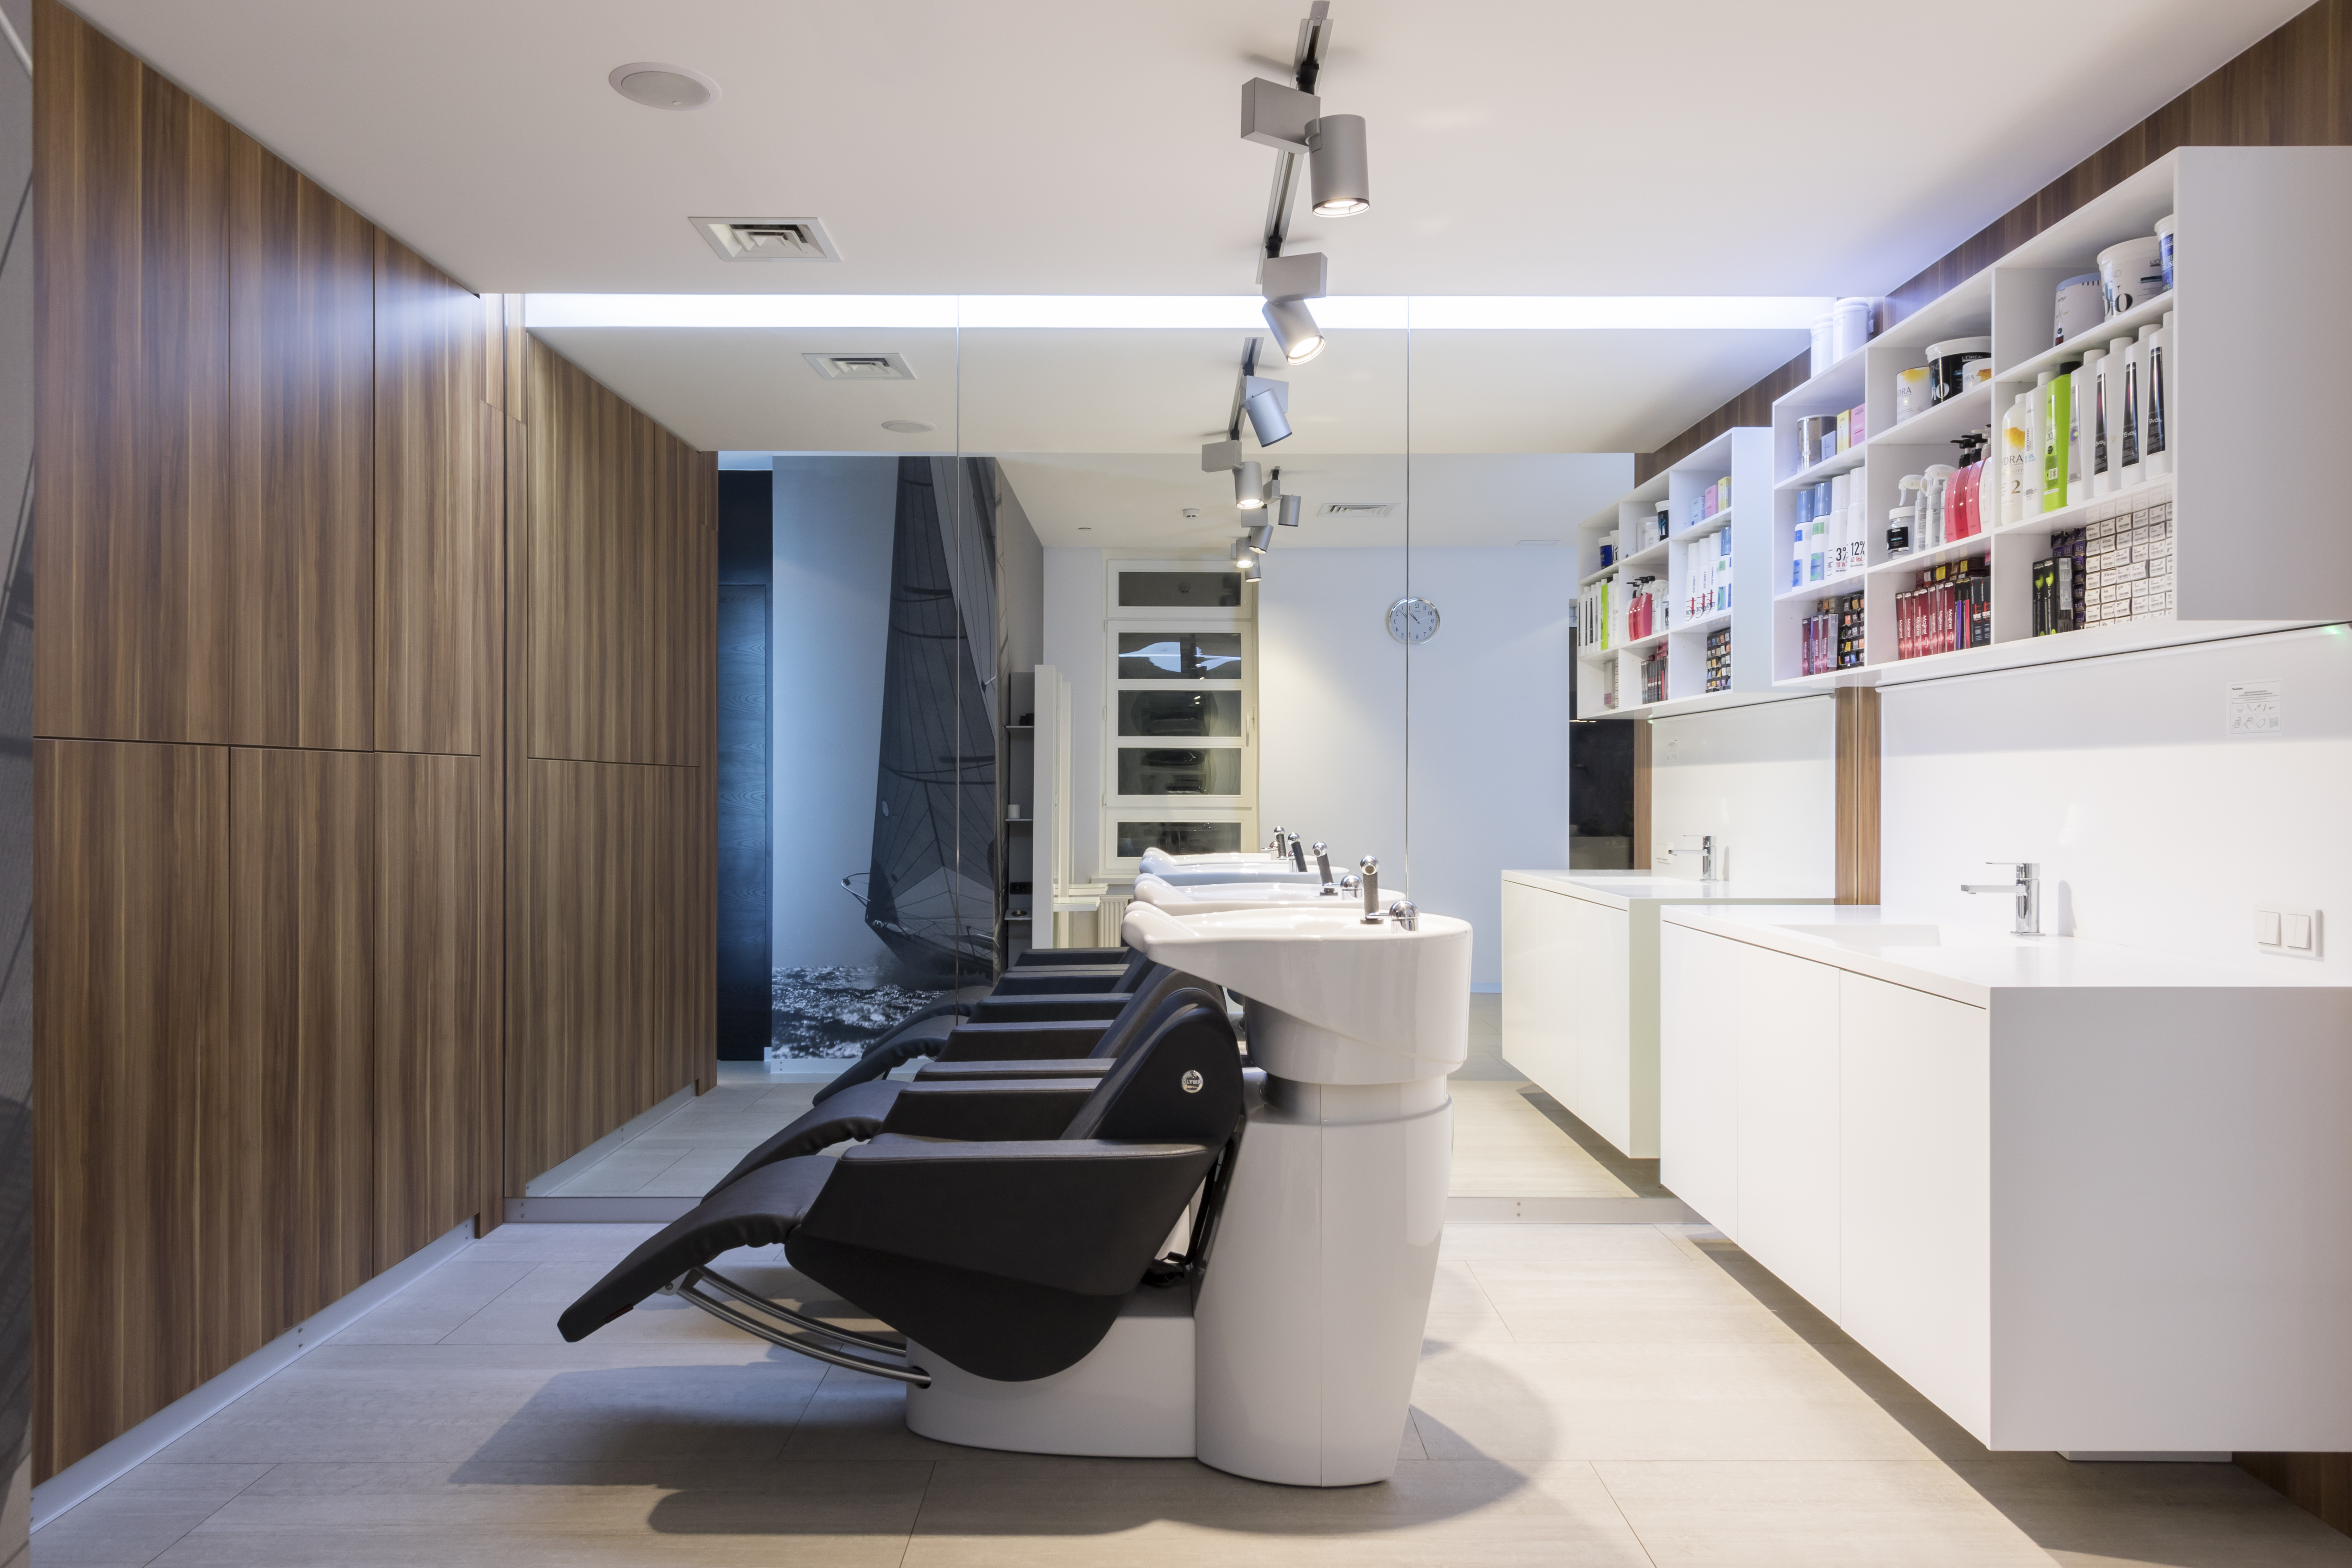 Зона моек и лаборатории, где готовятся компоненты для волос клиентов — окрашивания, лечения, завивки и других процедур.